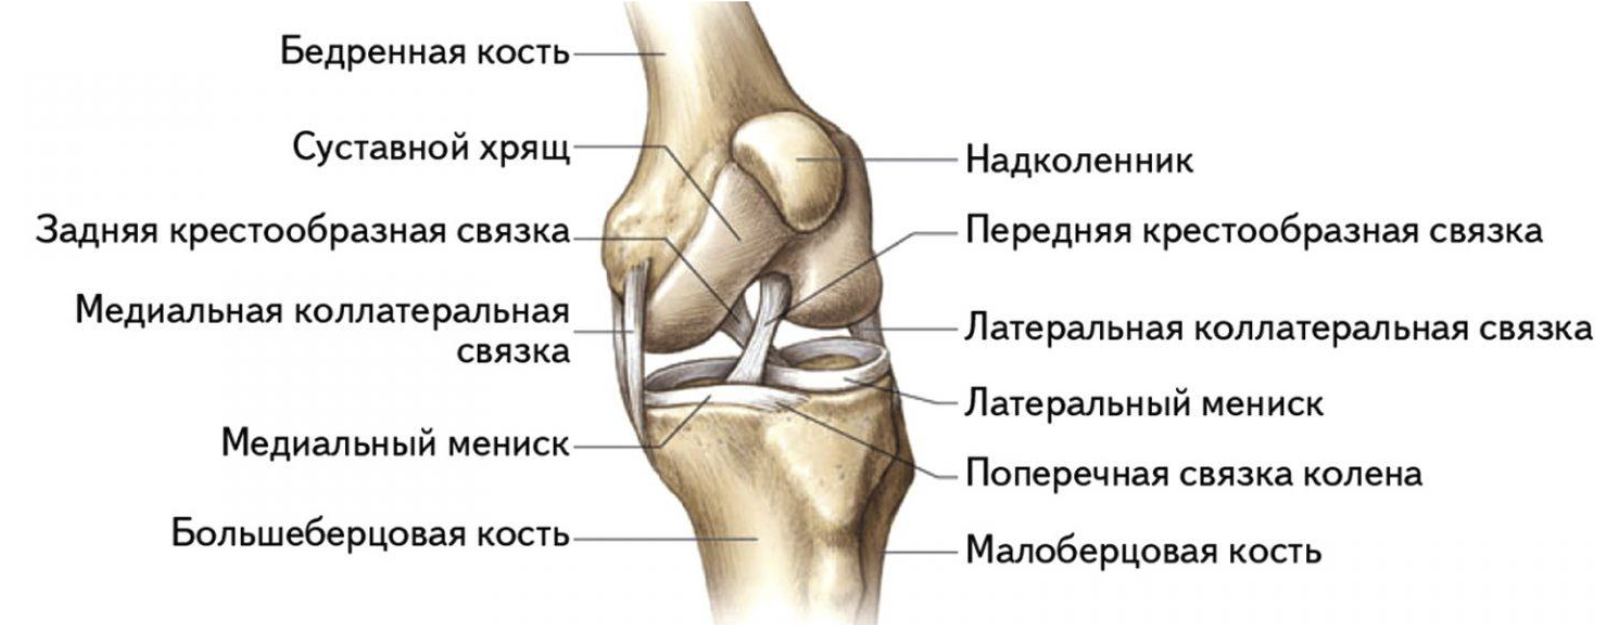 Внутри коленный сустав. Коленный сустав строение анатомия связки. Суставной хрящ большеберцовой кости. Коленный сустав анатомия вид сбоку. Поперечная связка коленного сустава анатомия.